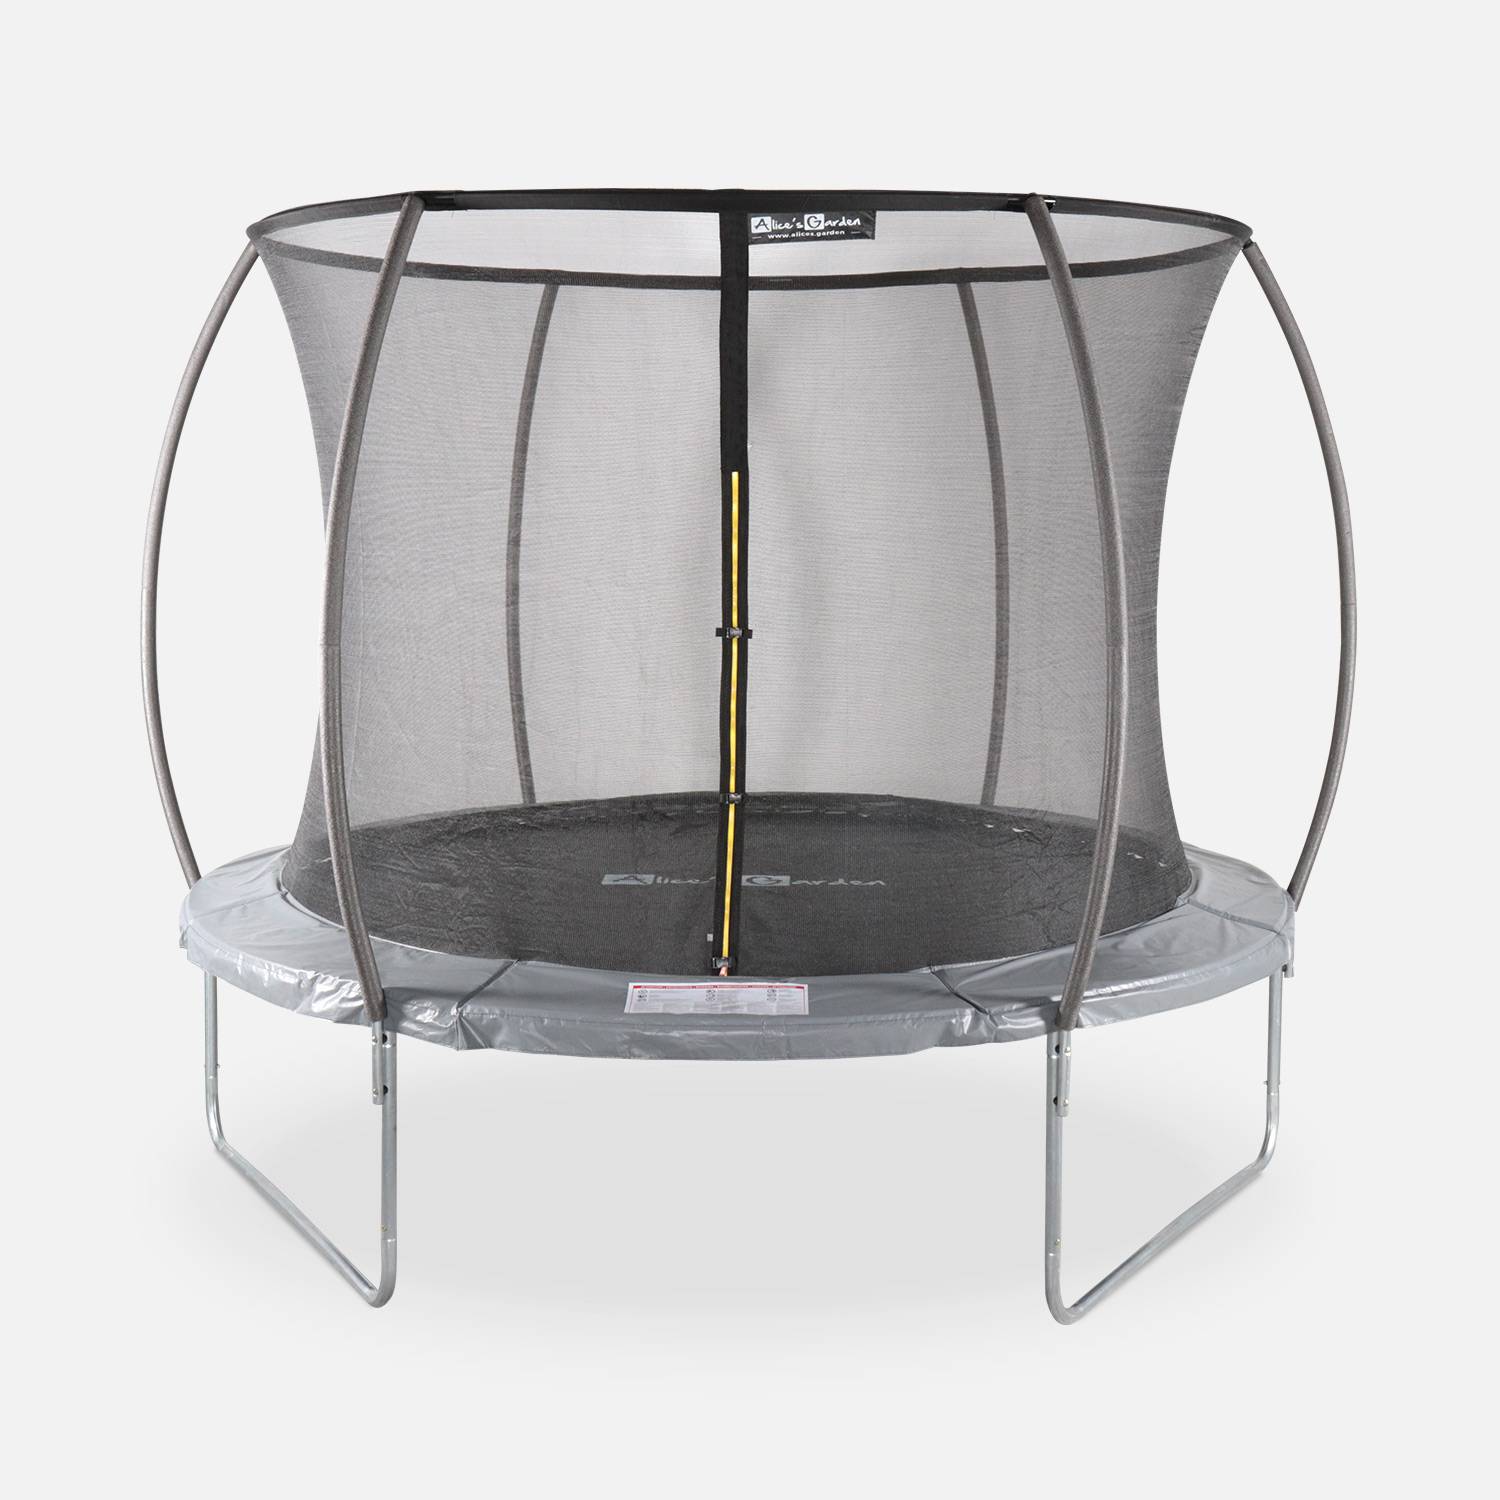 Trampolim redondo Ø 305cm cinzento com rede de proteção interior - Mars Inner - Novo modelo - trampolim de jardim 3,05m 305 cm |Design | Qualidade PRO | Normas UE Photo1